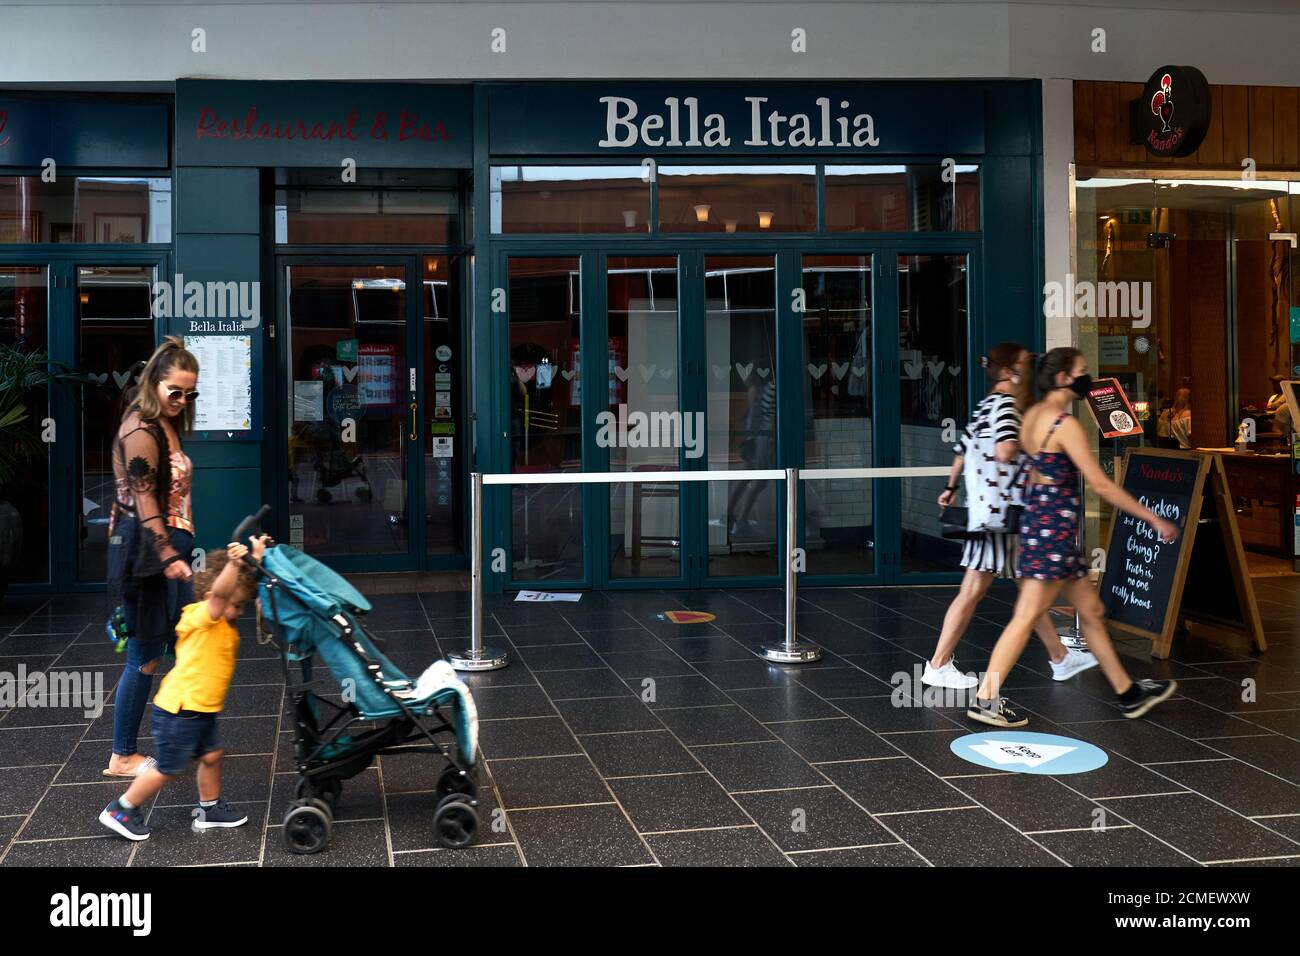 Les gens marchent devant un restaurant fermé Bella Italia dans le Centre commercial Atrium dans le centre-ville de Camberley Banque D'Images